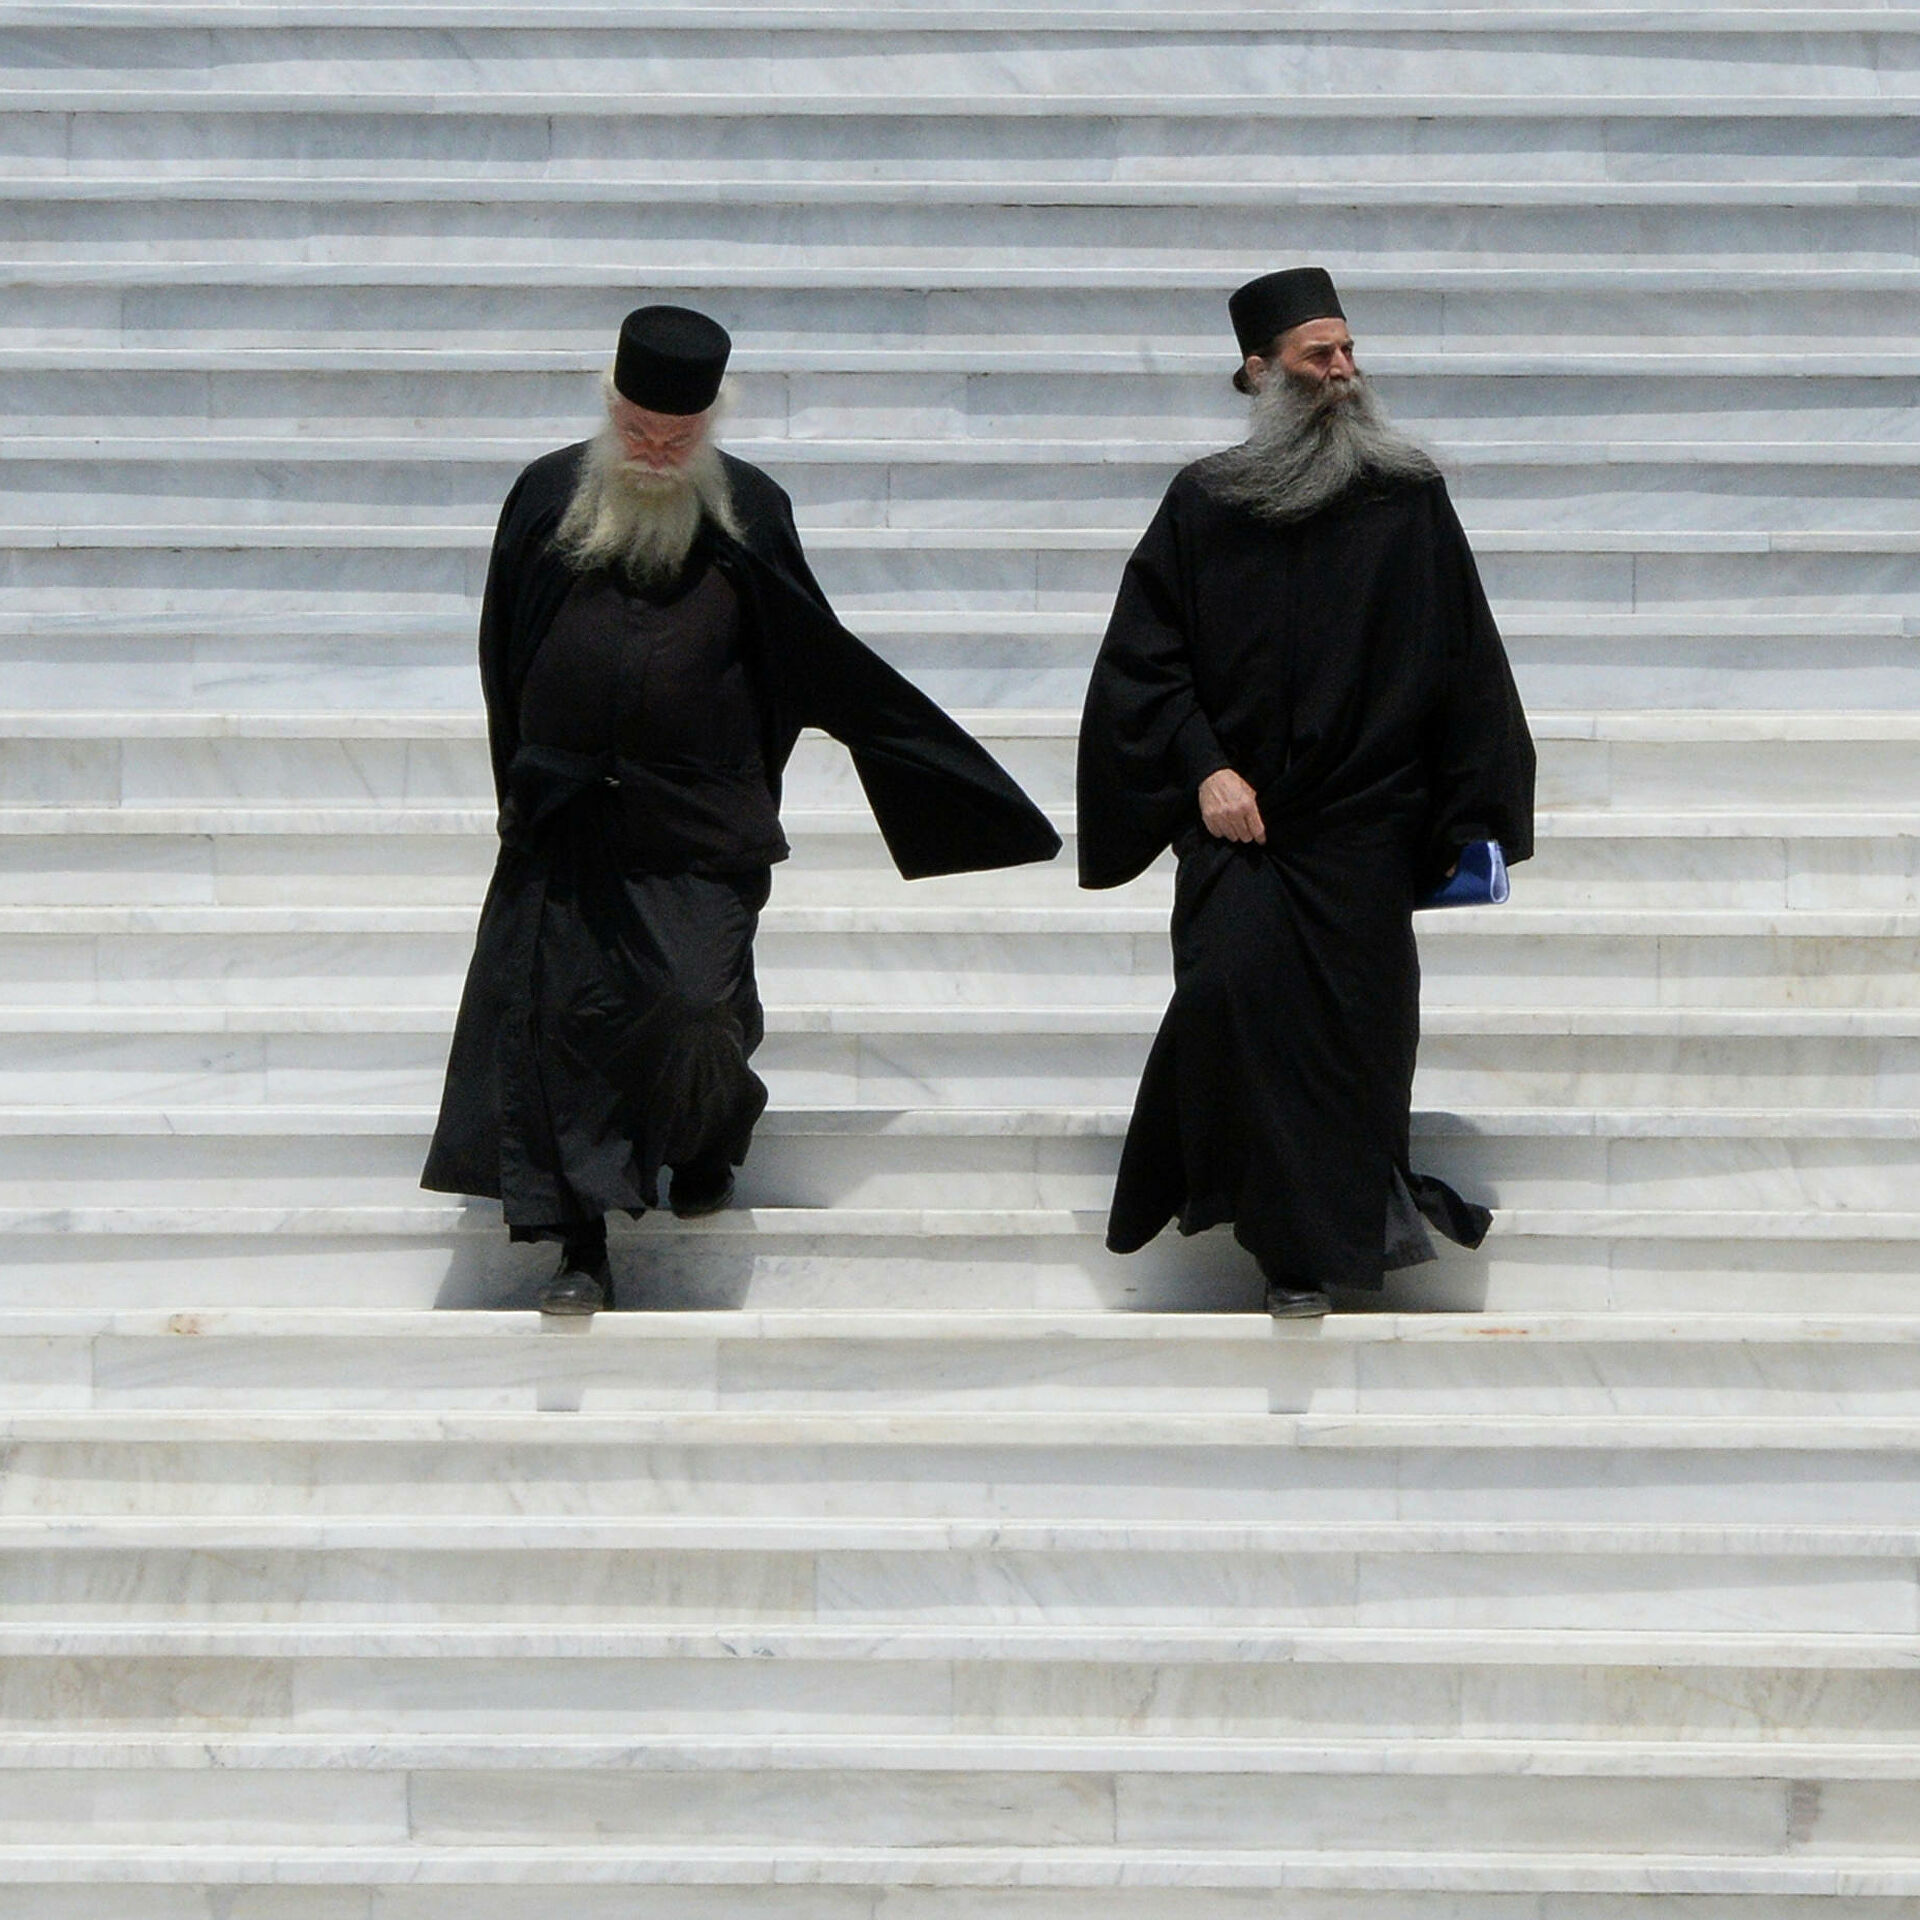 монахи горы афон